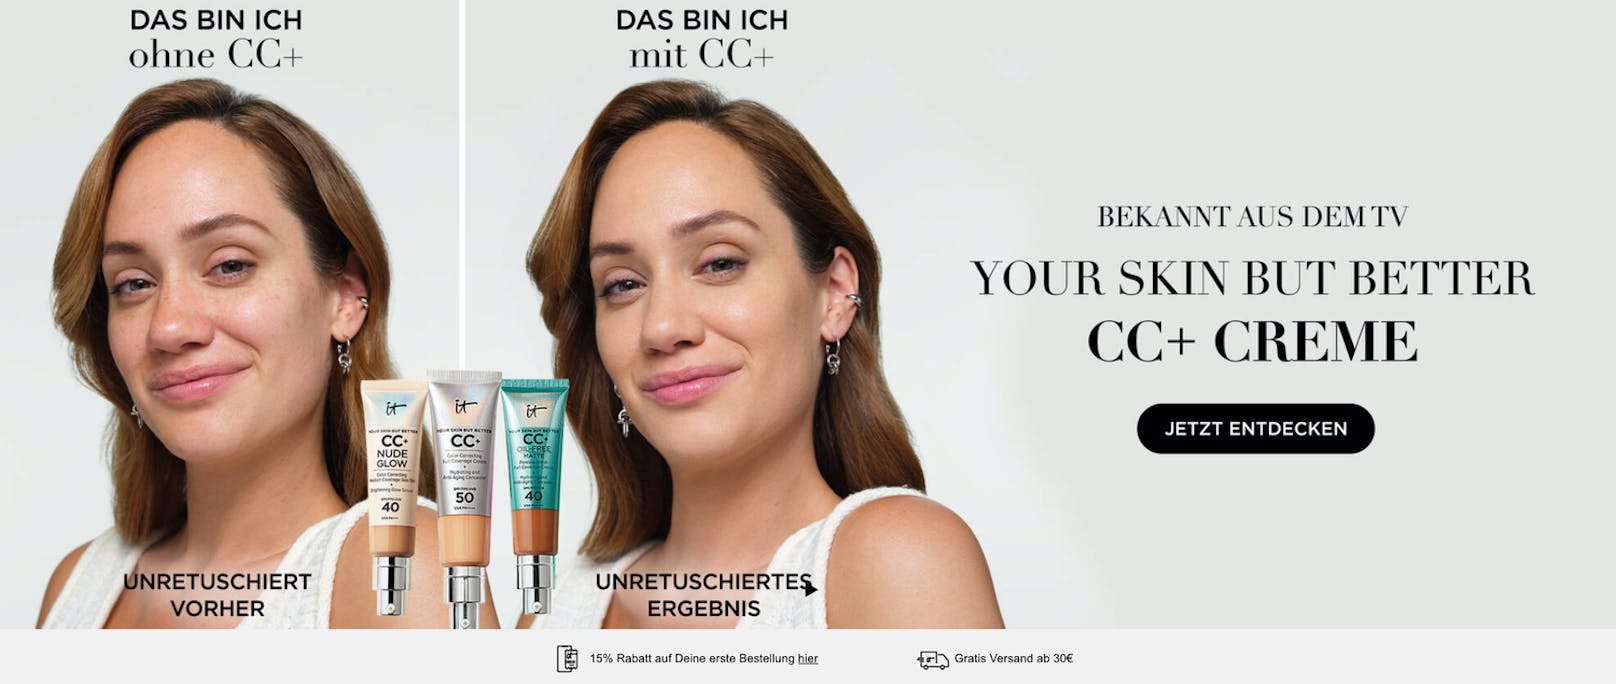 So sieht die fertige iT-Cosmetics-Kampagne mit Schwarzjirg aus